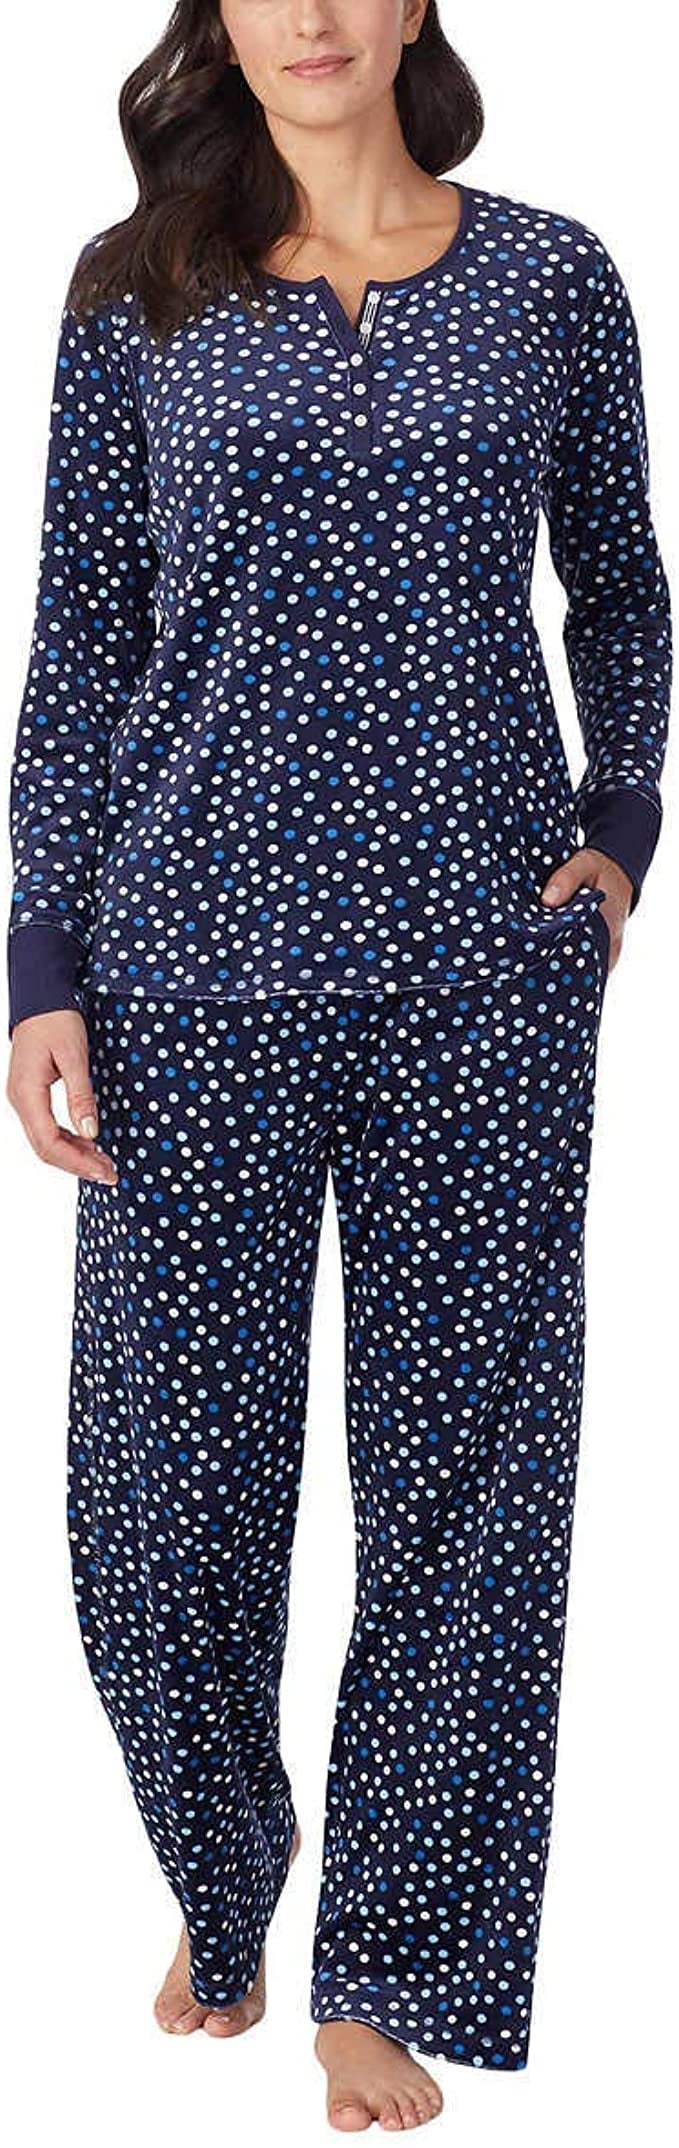 Sz S 10-12 Navy blue spots NAUTICA ladies 2 piece PJs Pyjama lounge wear set 